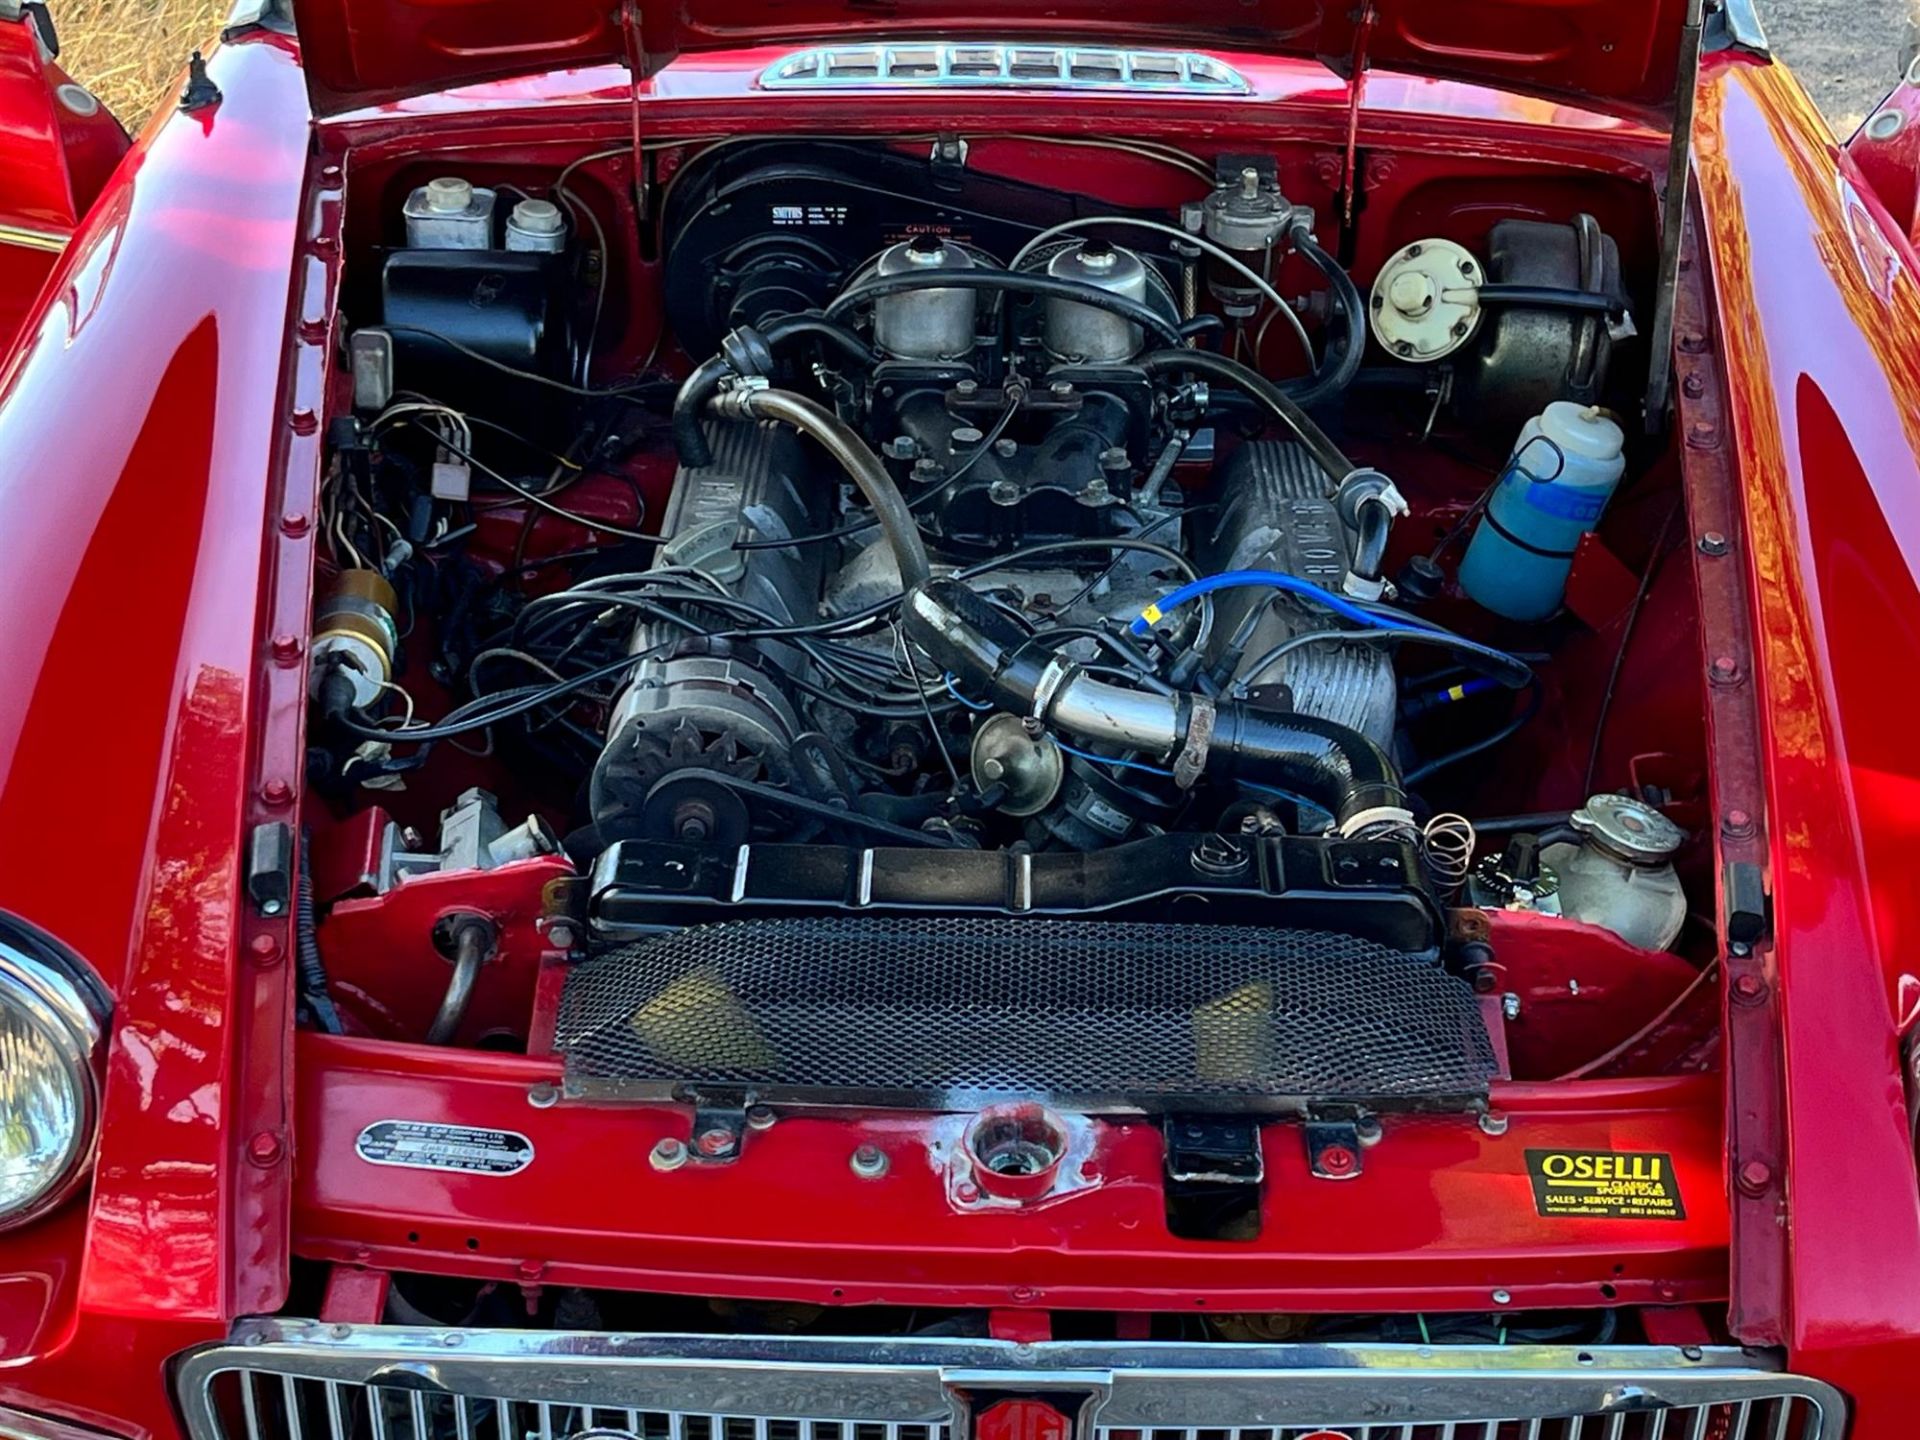 1967 MG B V8 Roadster - Image 7 of 10